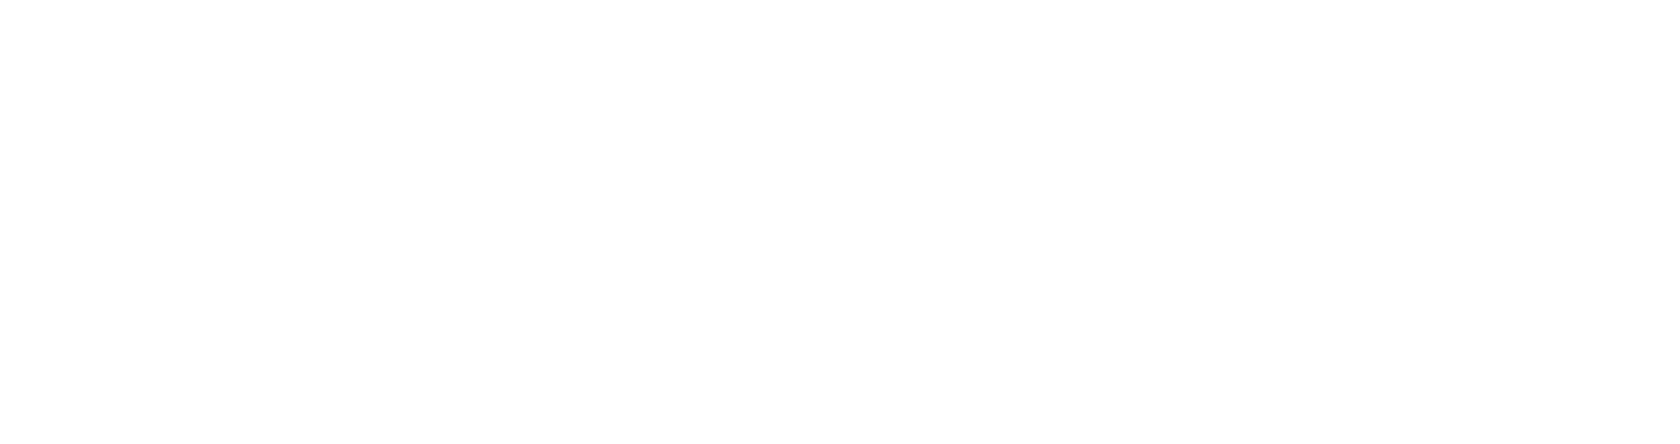 Варианты логотипа блога финансовой компании